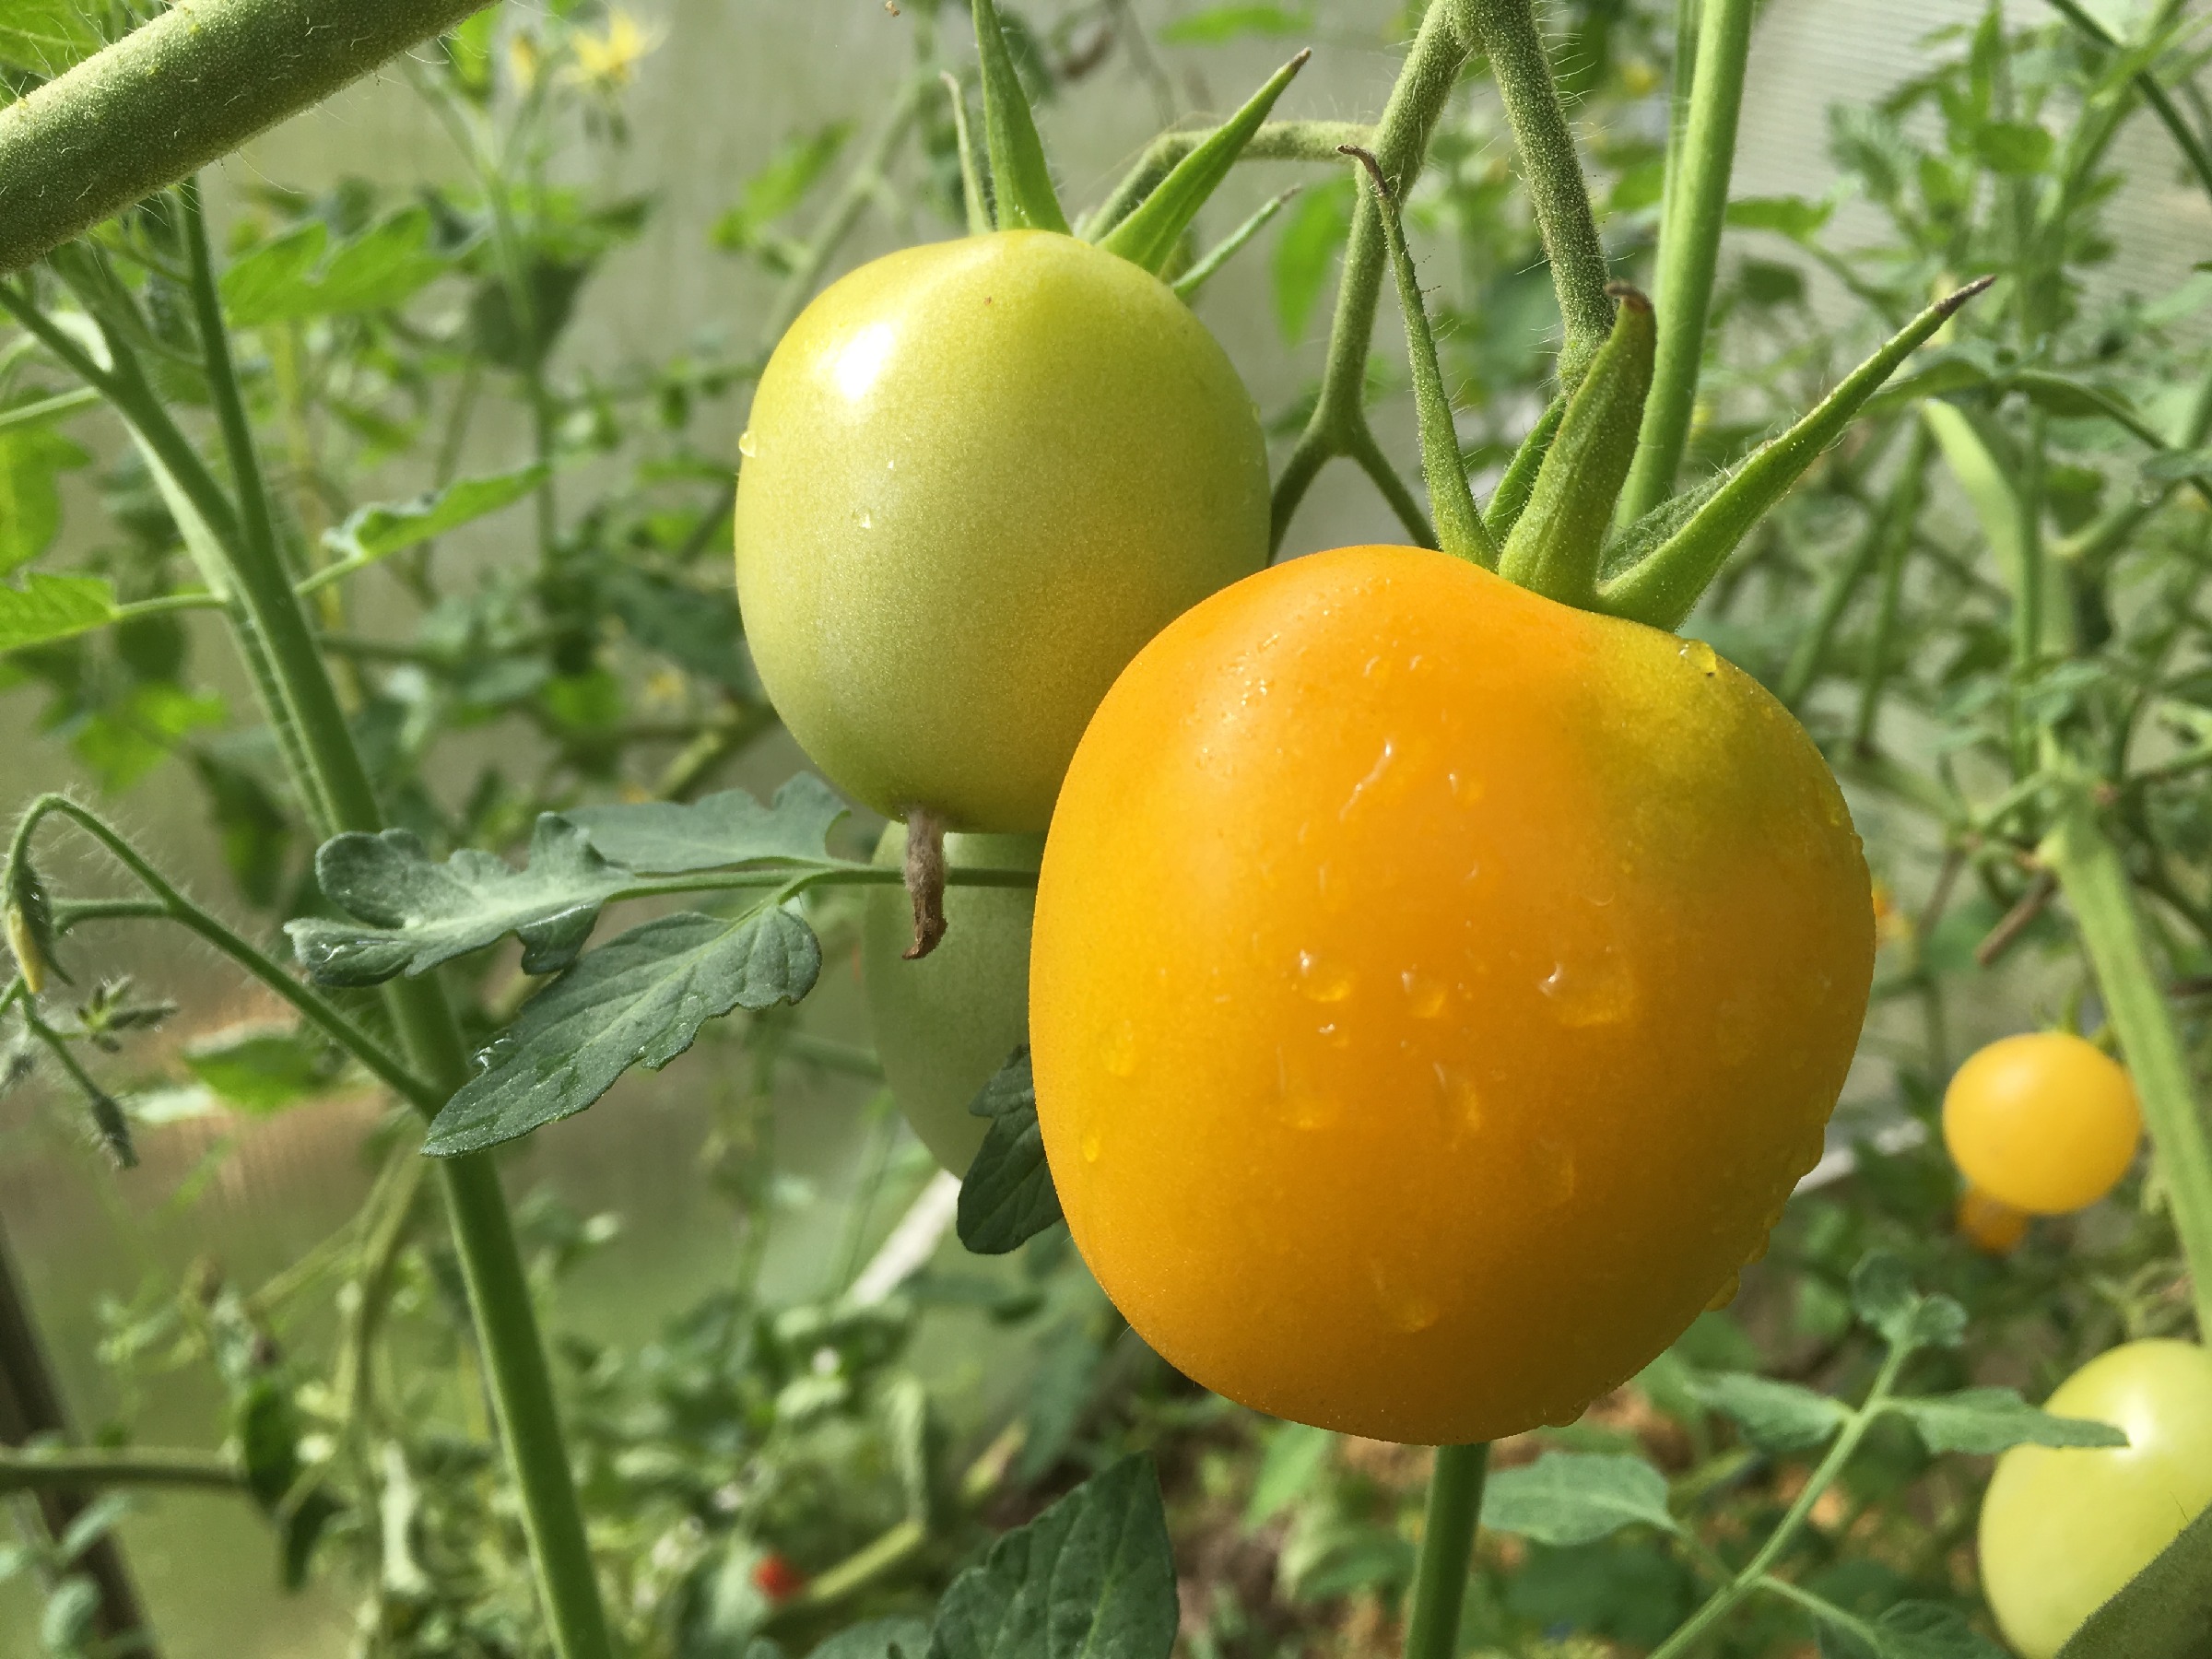 Сорт томатов золотые купола отзывы